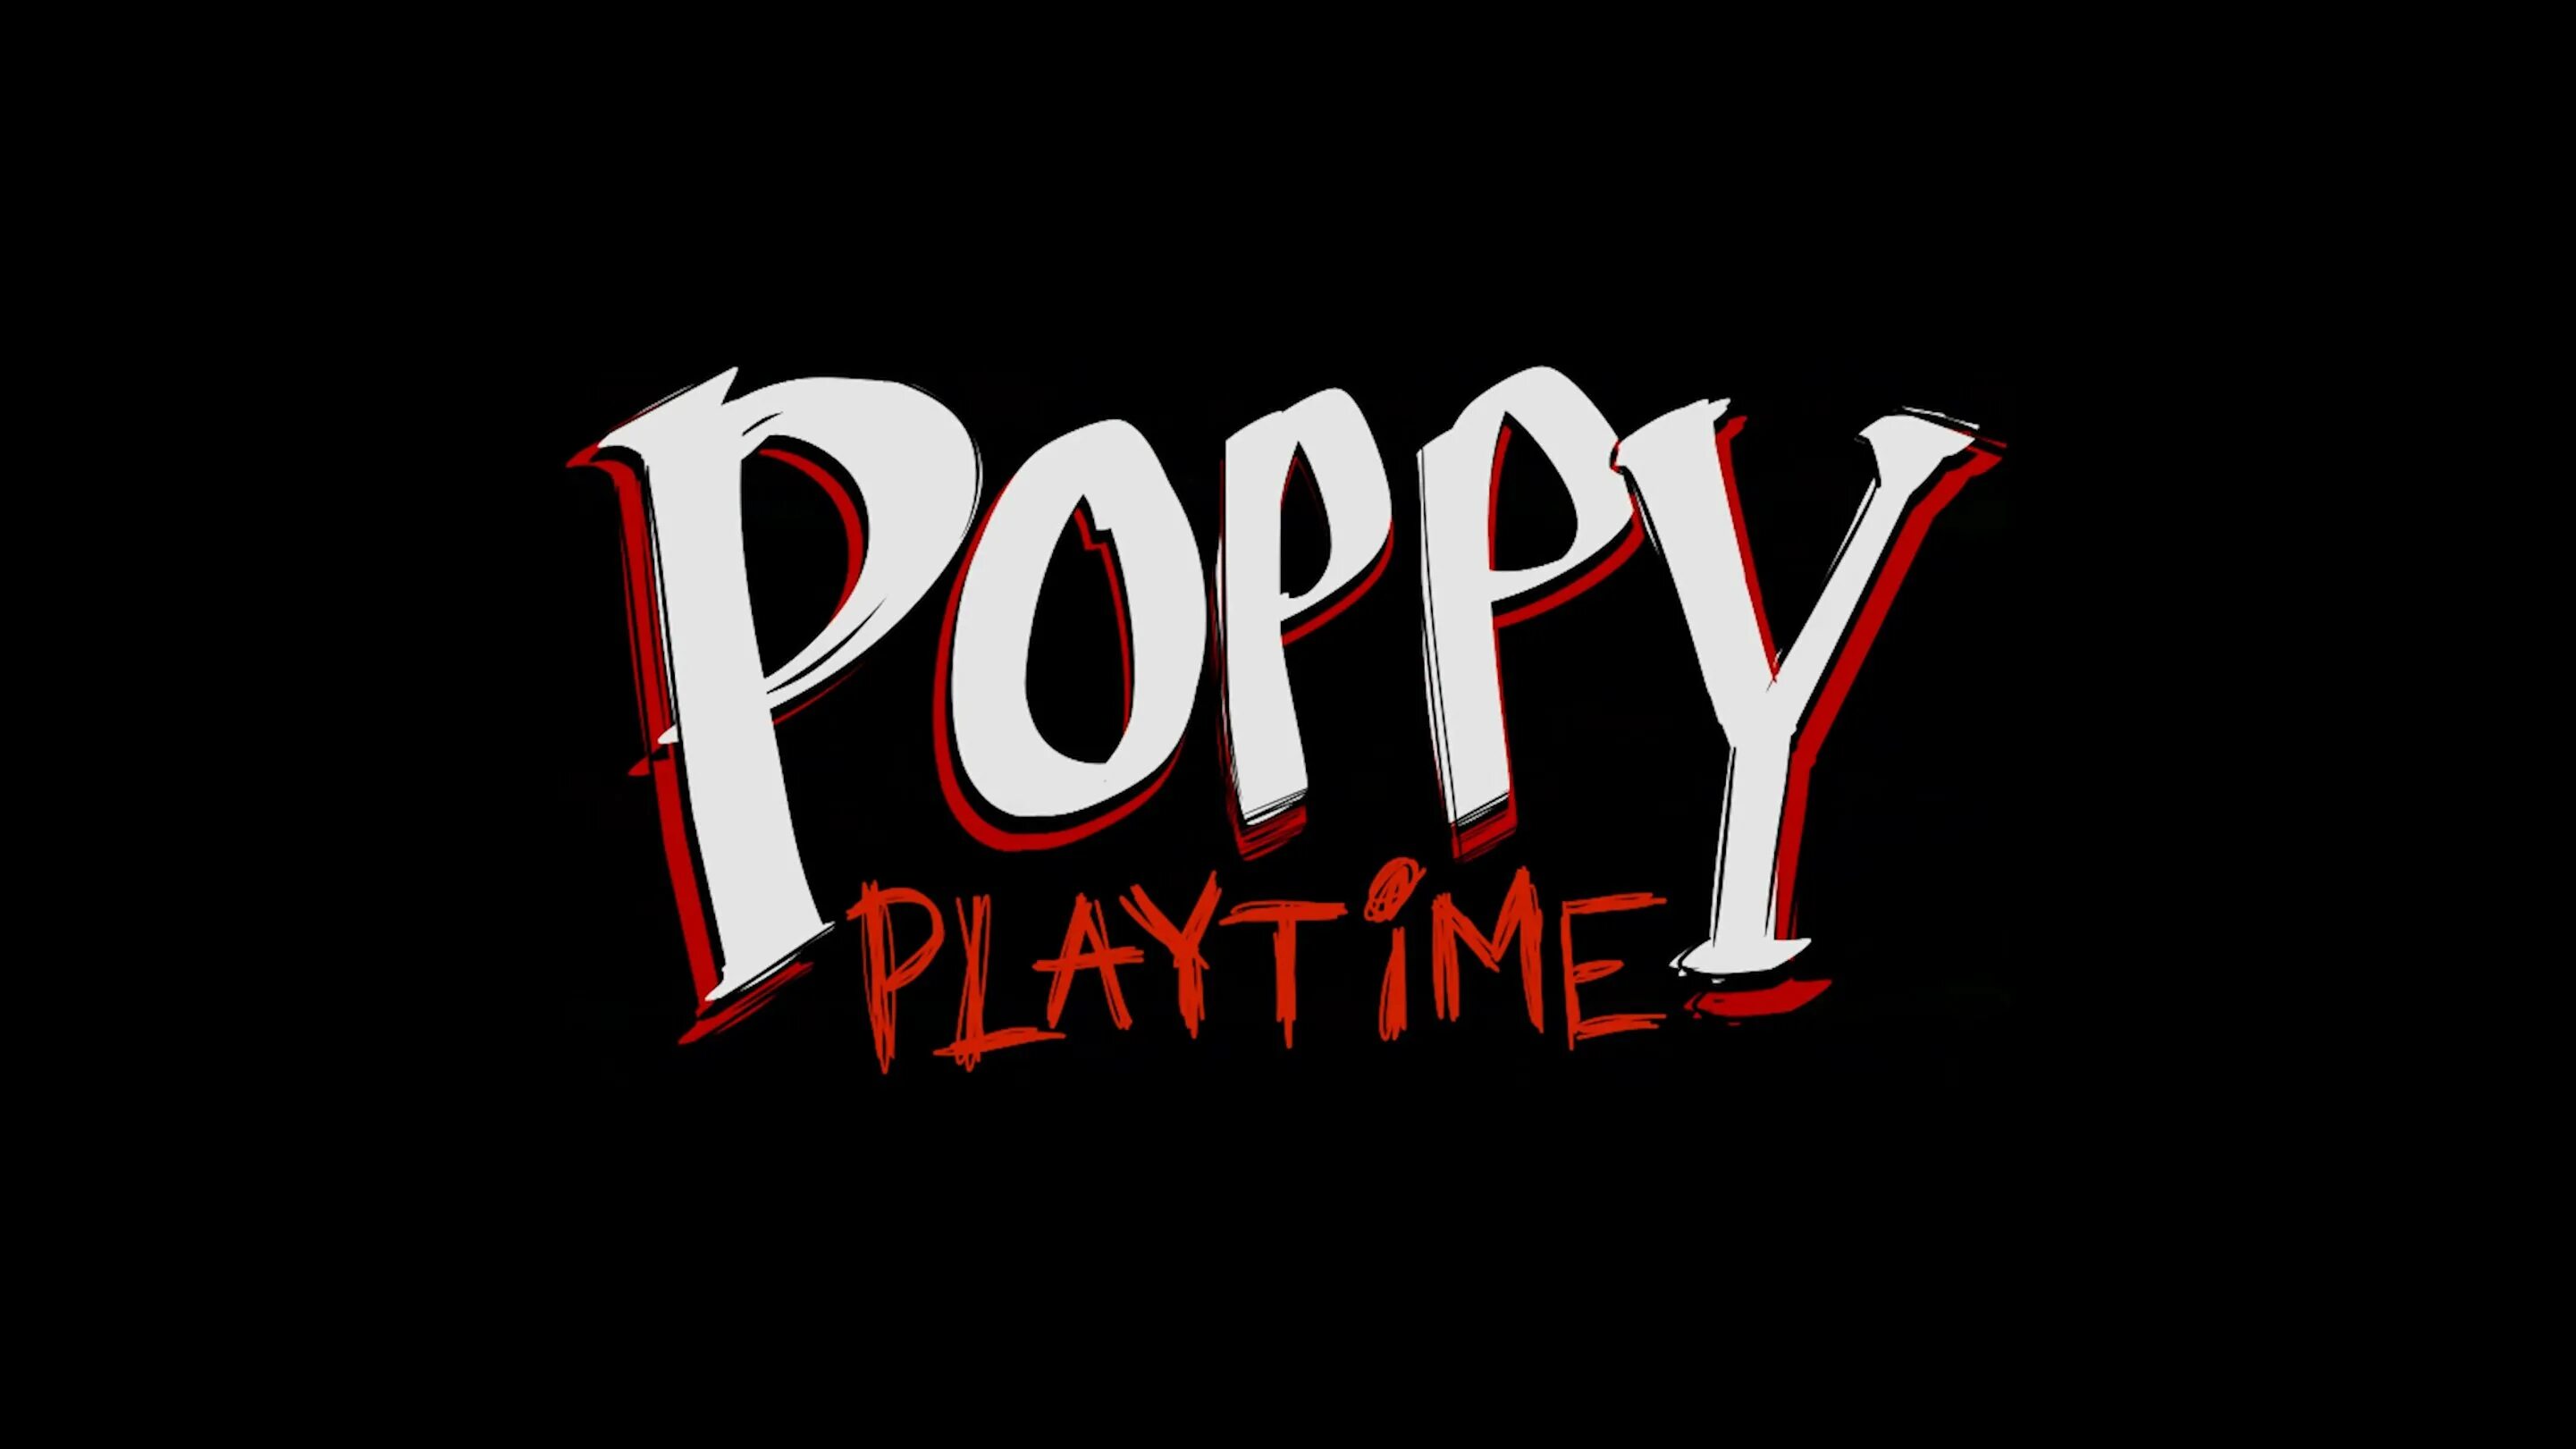 Ch time. Poppy Playtime. Poppy Playtime надпись. Poppy Playtime 2 надпись. Poppy Playtime 1.